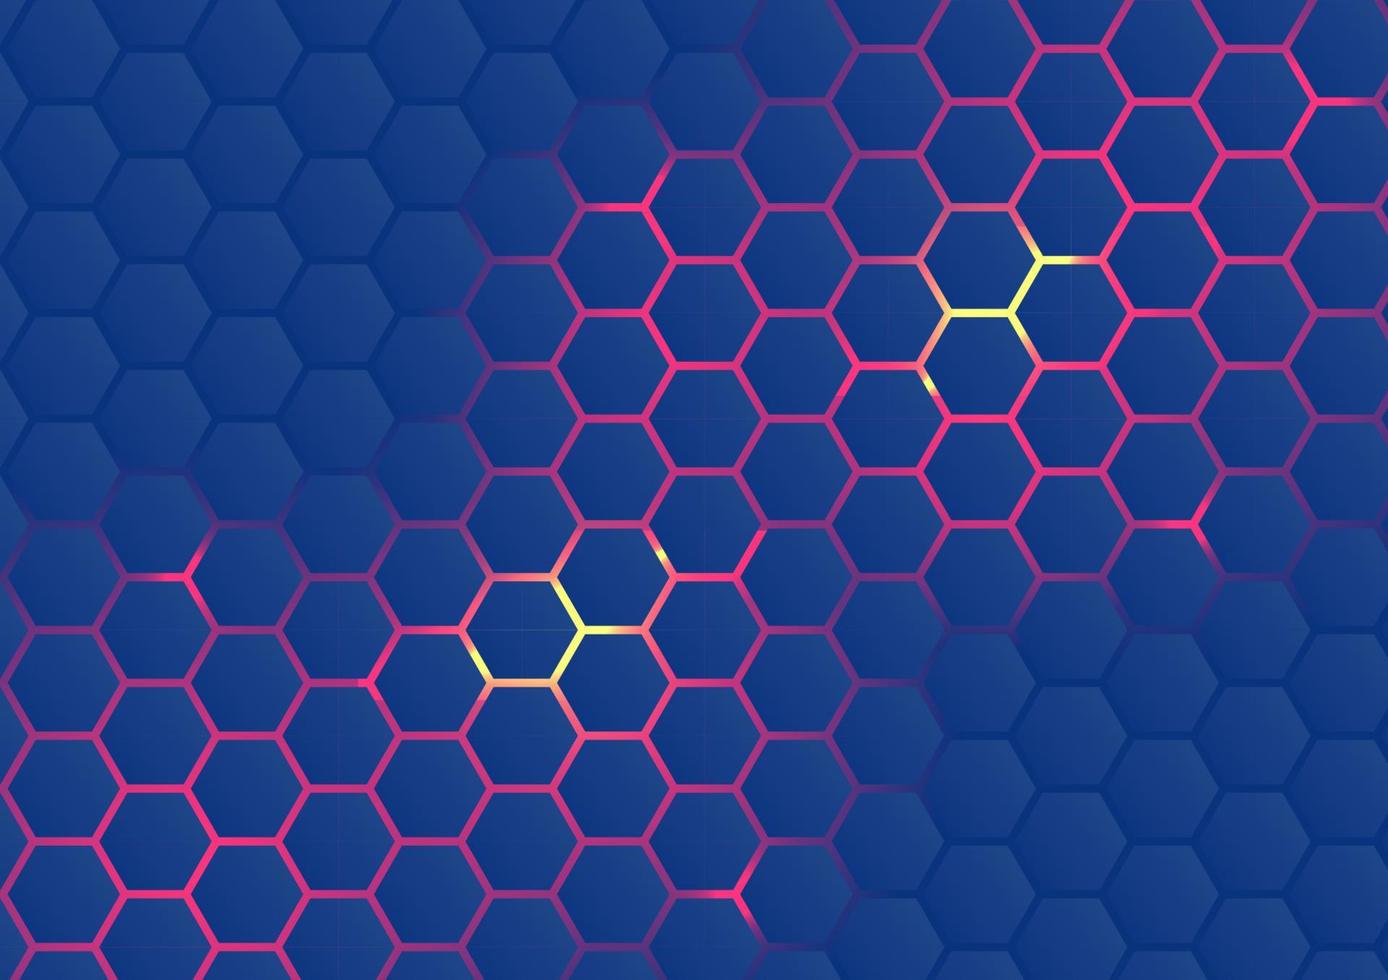 arrière-plan vectoriel abstrait de la technologie moderne dans les nids d'abeilles ou les cellules de la ruche. forme hexagonale rouge et jaune sur fond bleu.